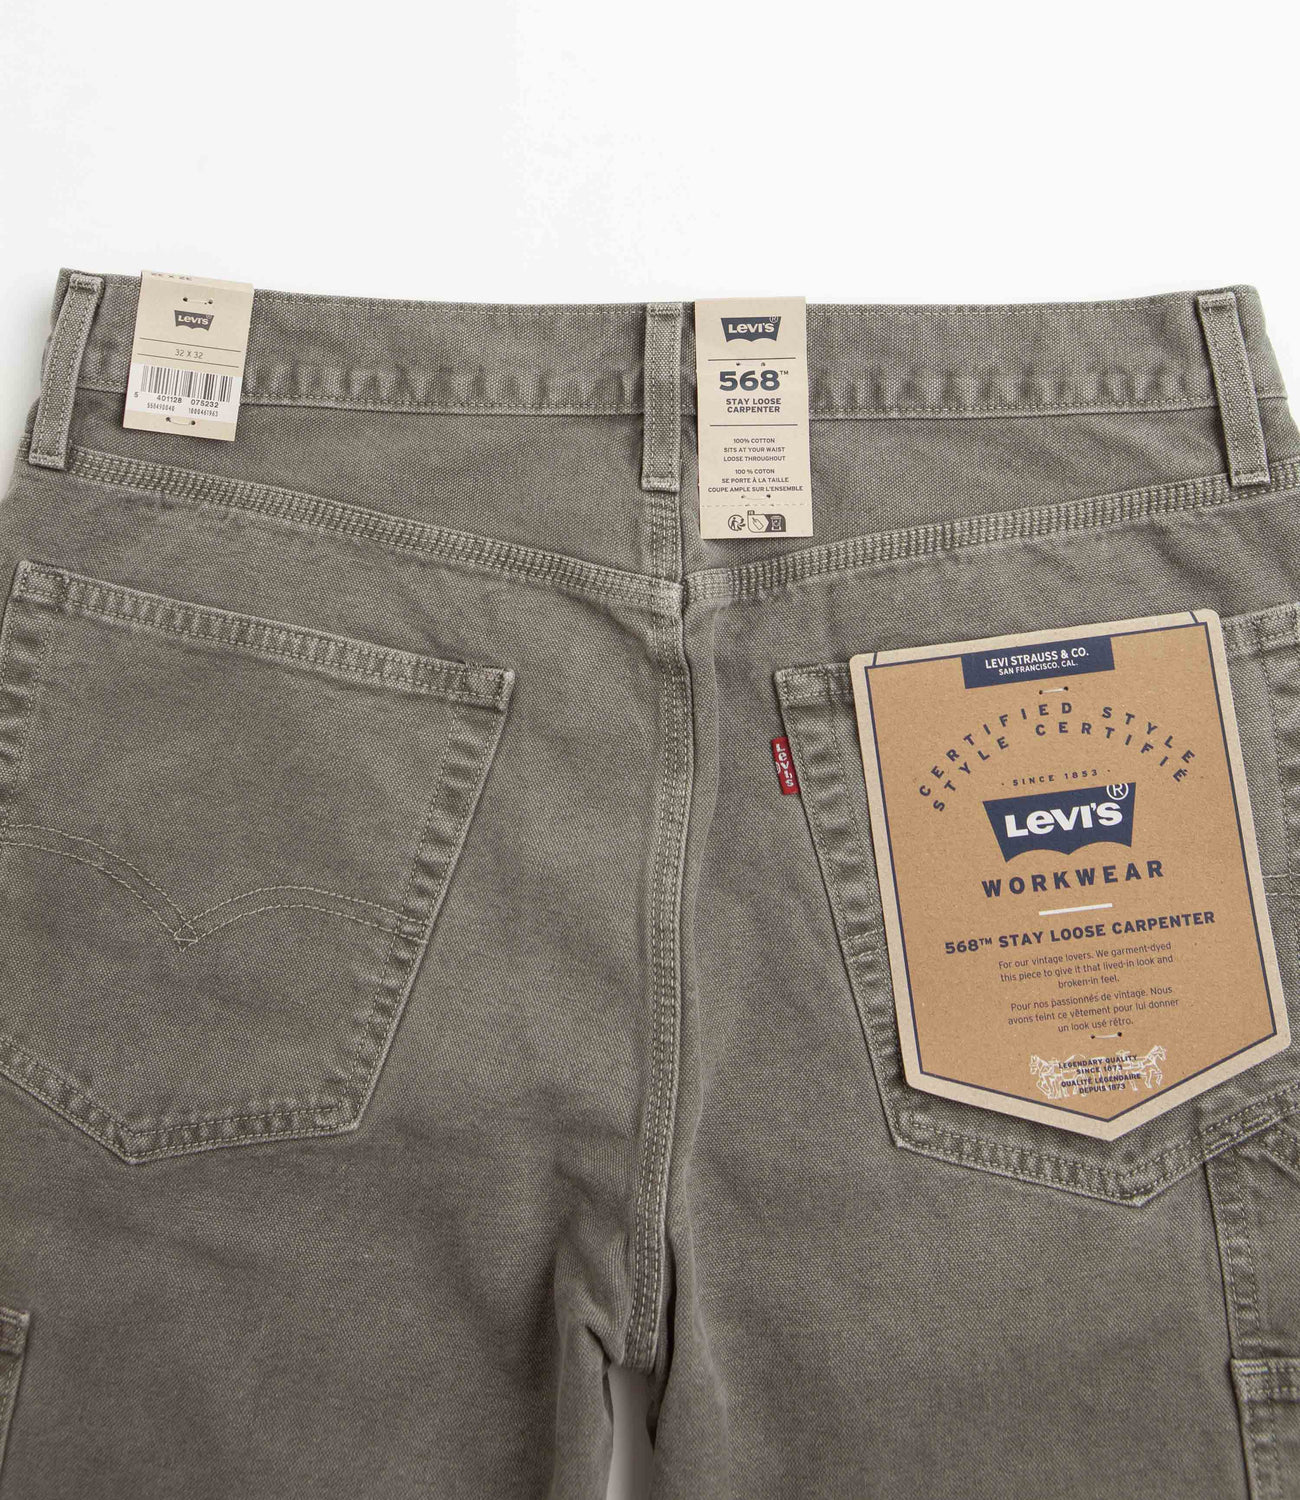 Levis Cargo Cotton Pants Women's Size 4 Straight... - Depop